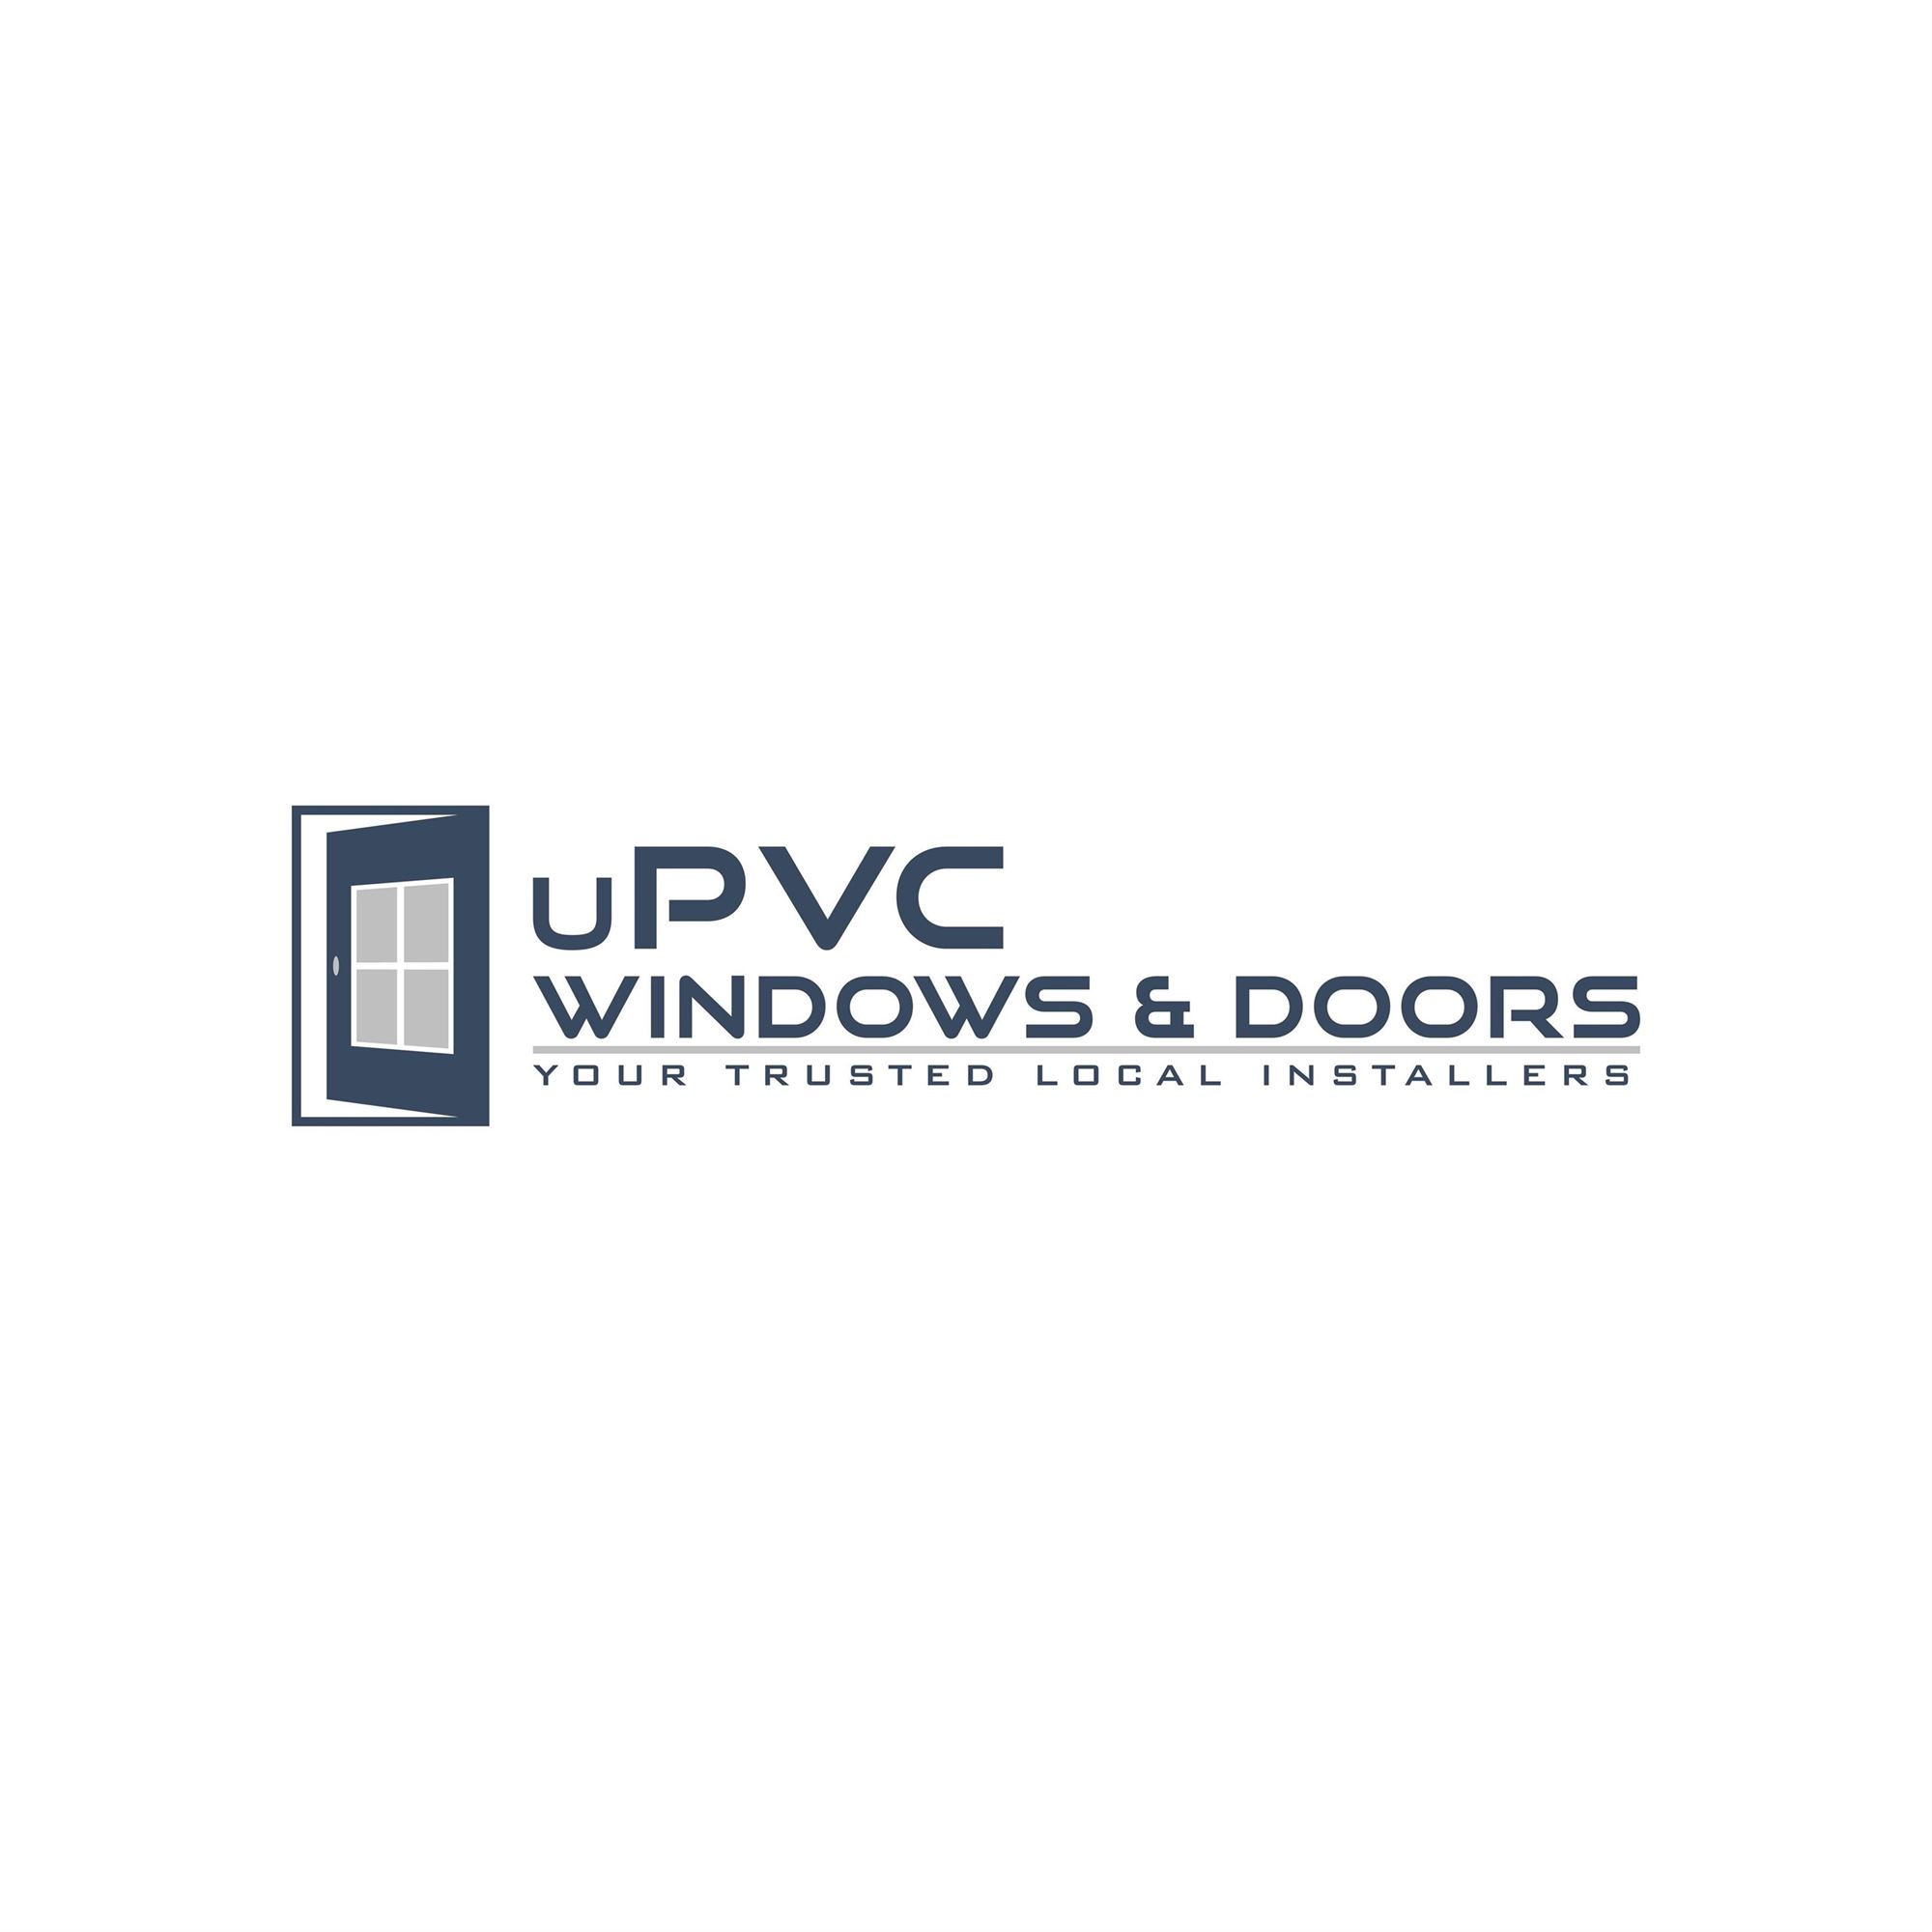 uPVC Windows & Doors Newhaven Launches New Website